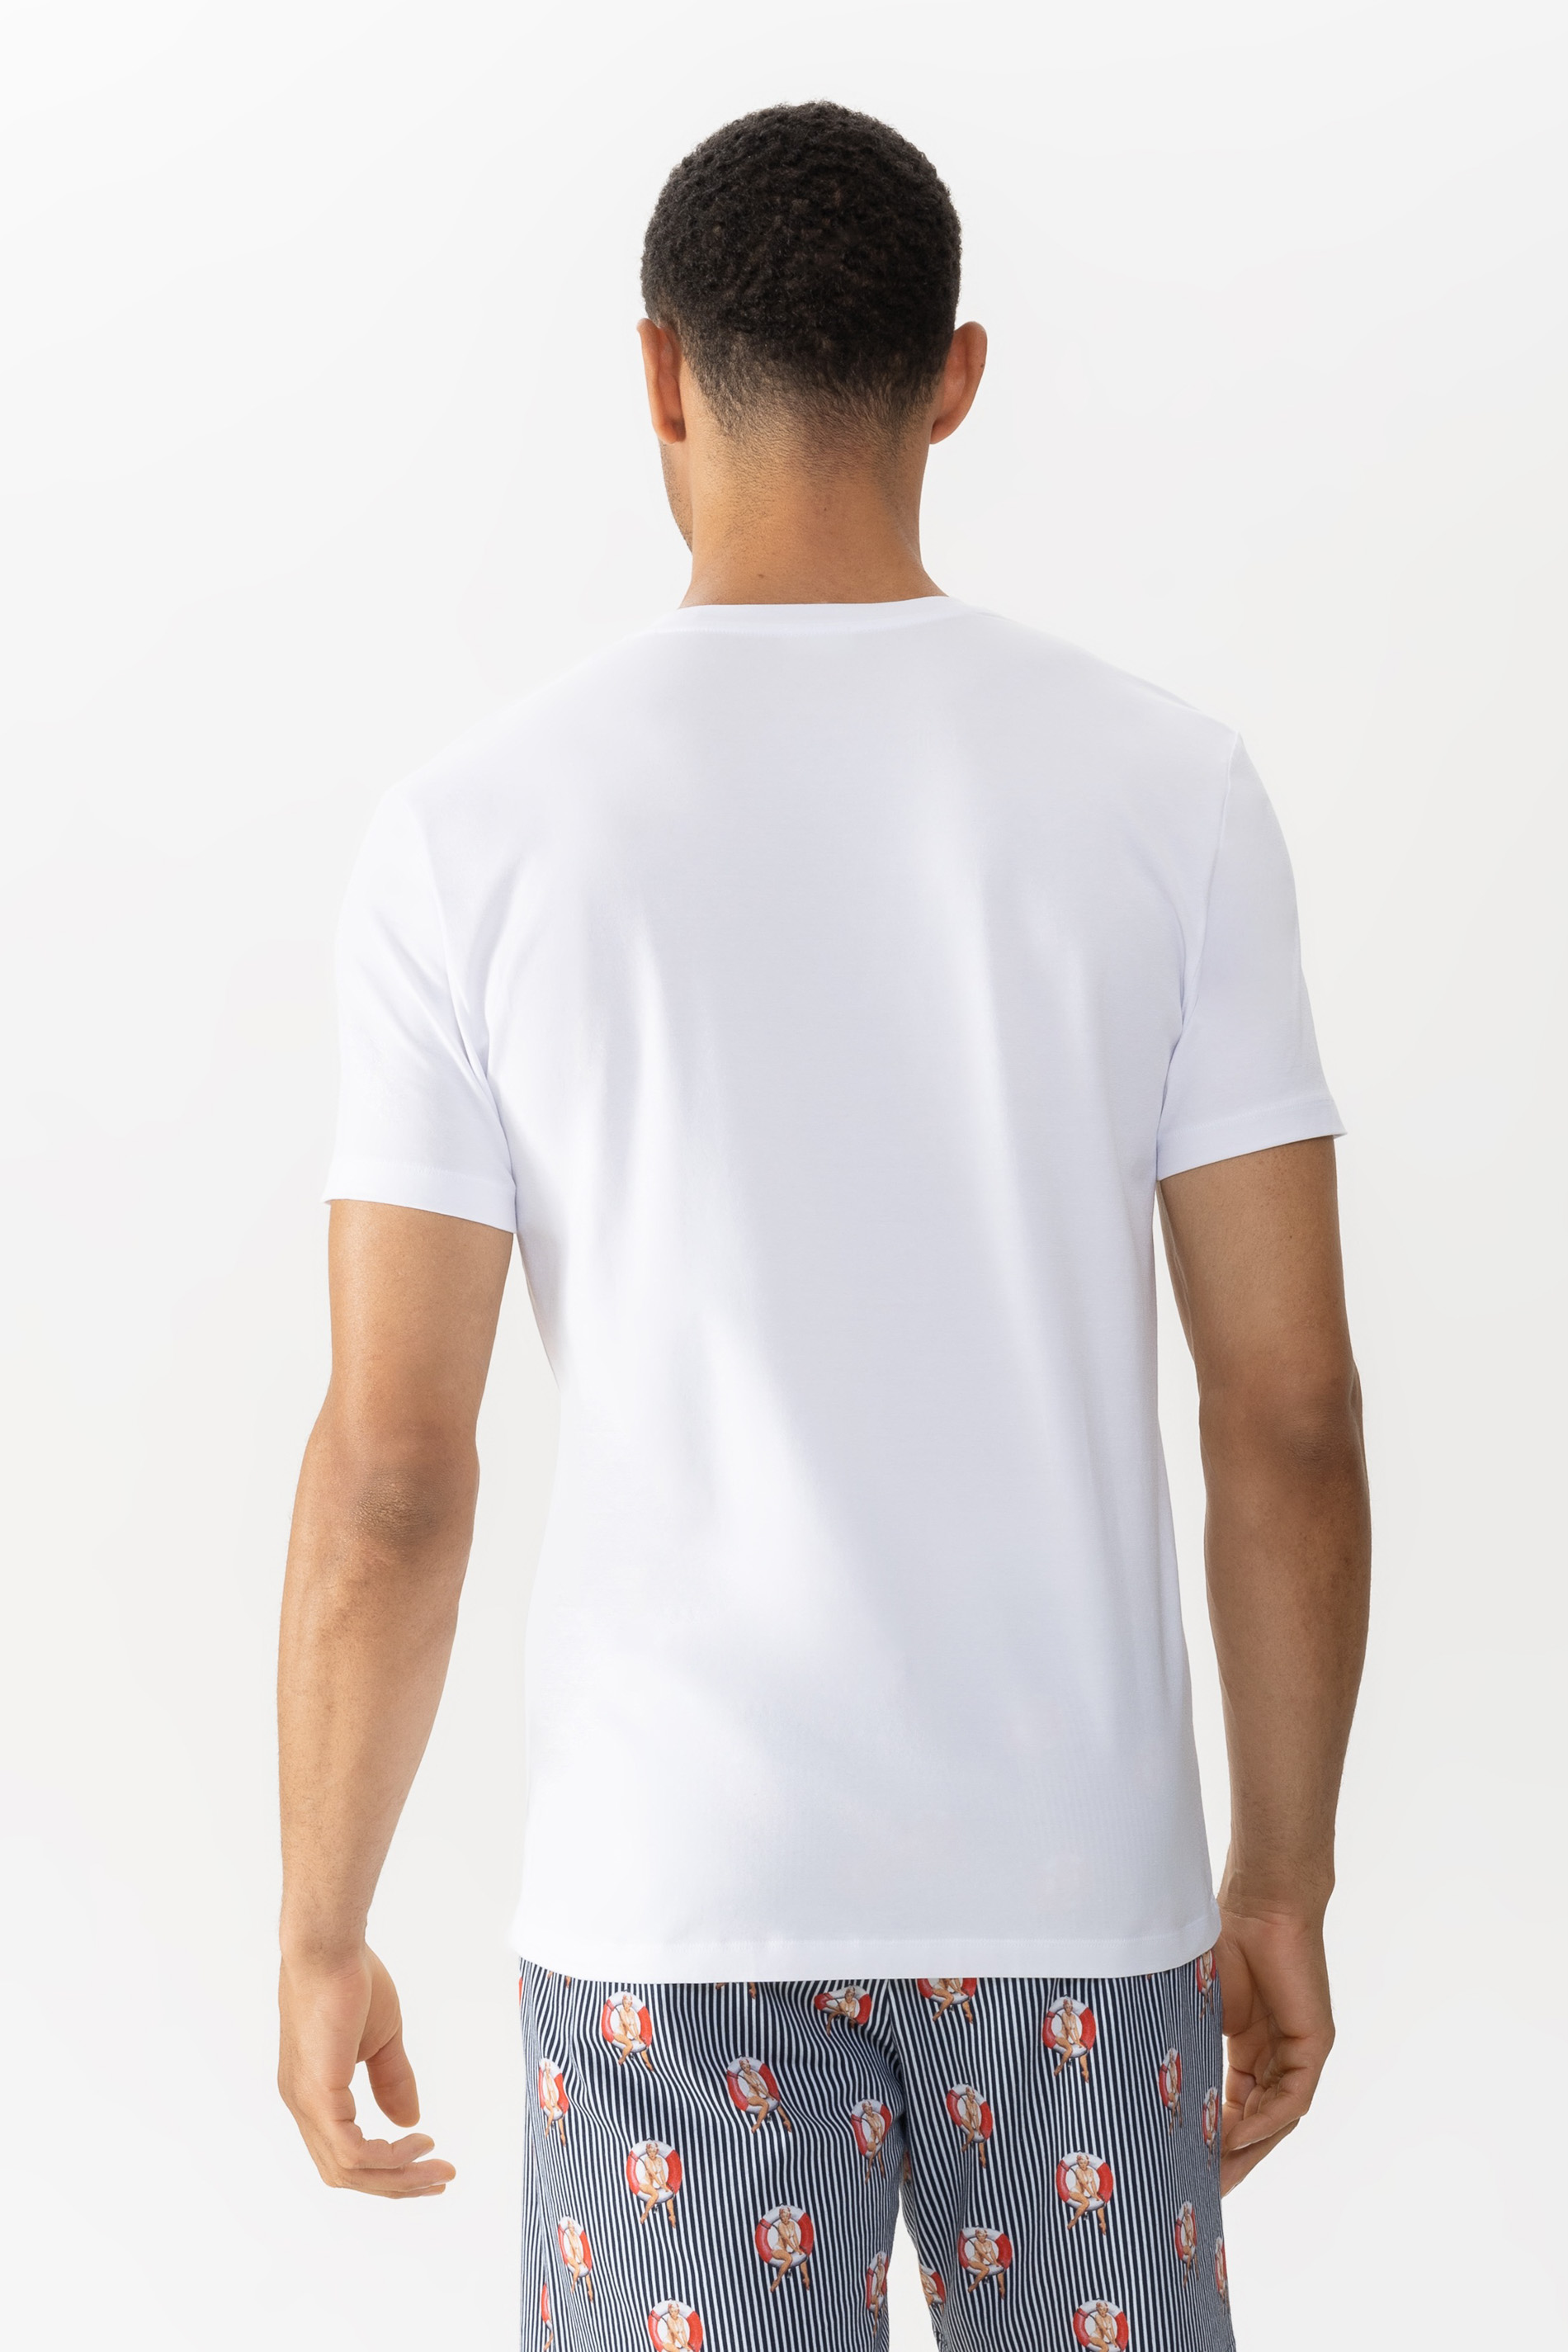 T-shirt Serie Lifebelt Achteraanzicht | mey®